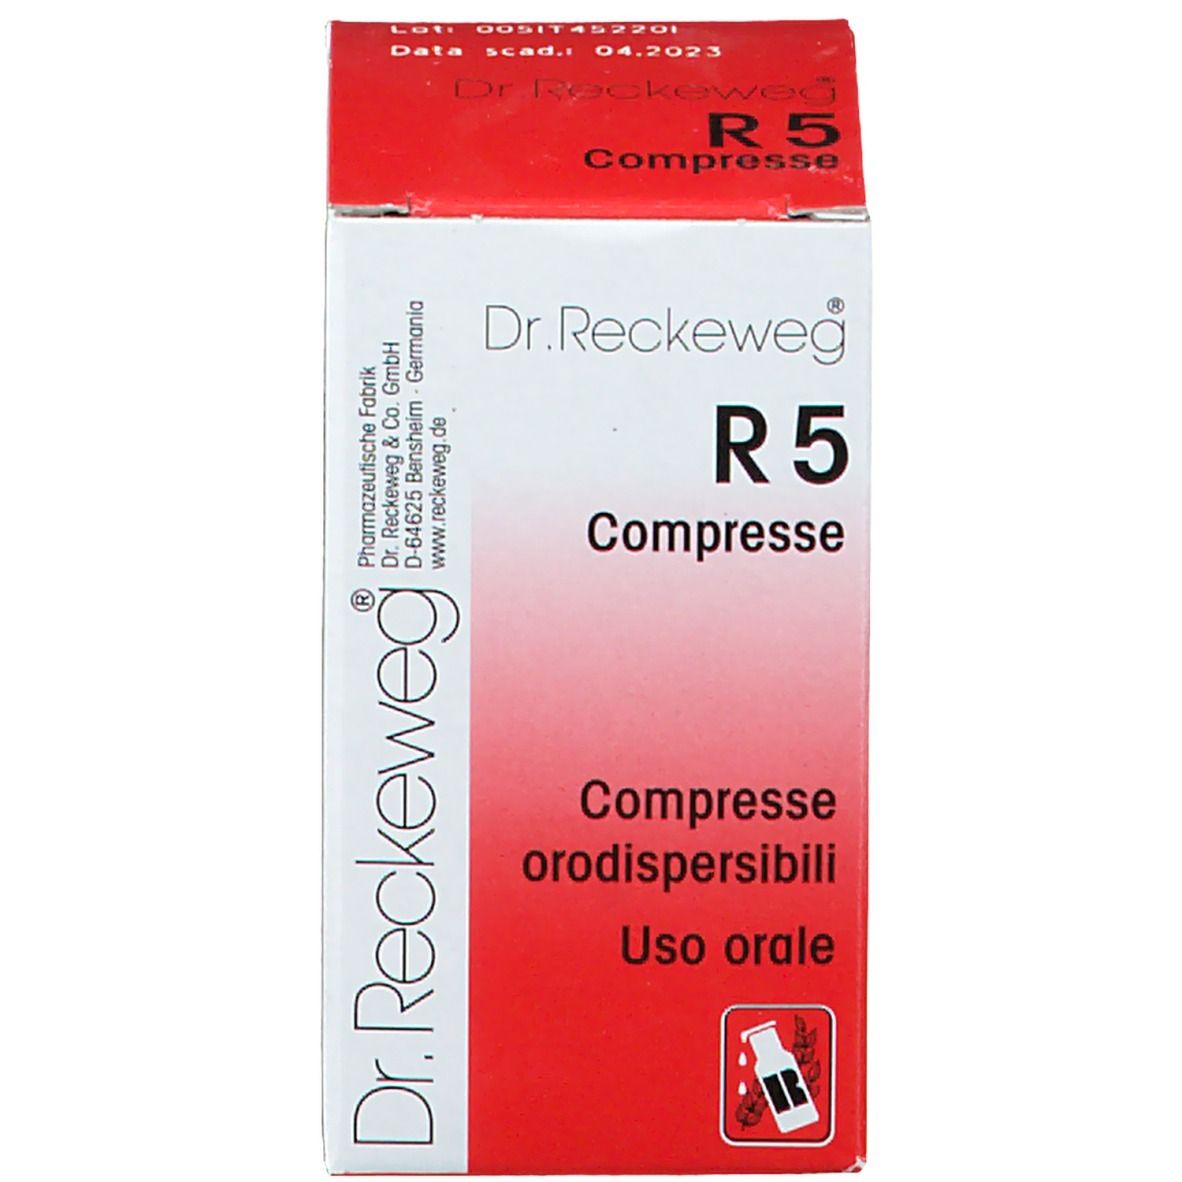 Dr. Reckeweg R 5 Compresse